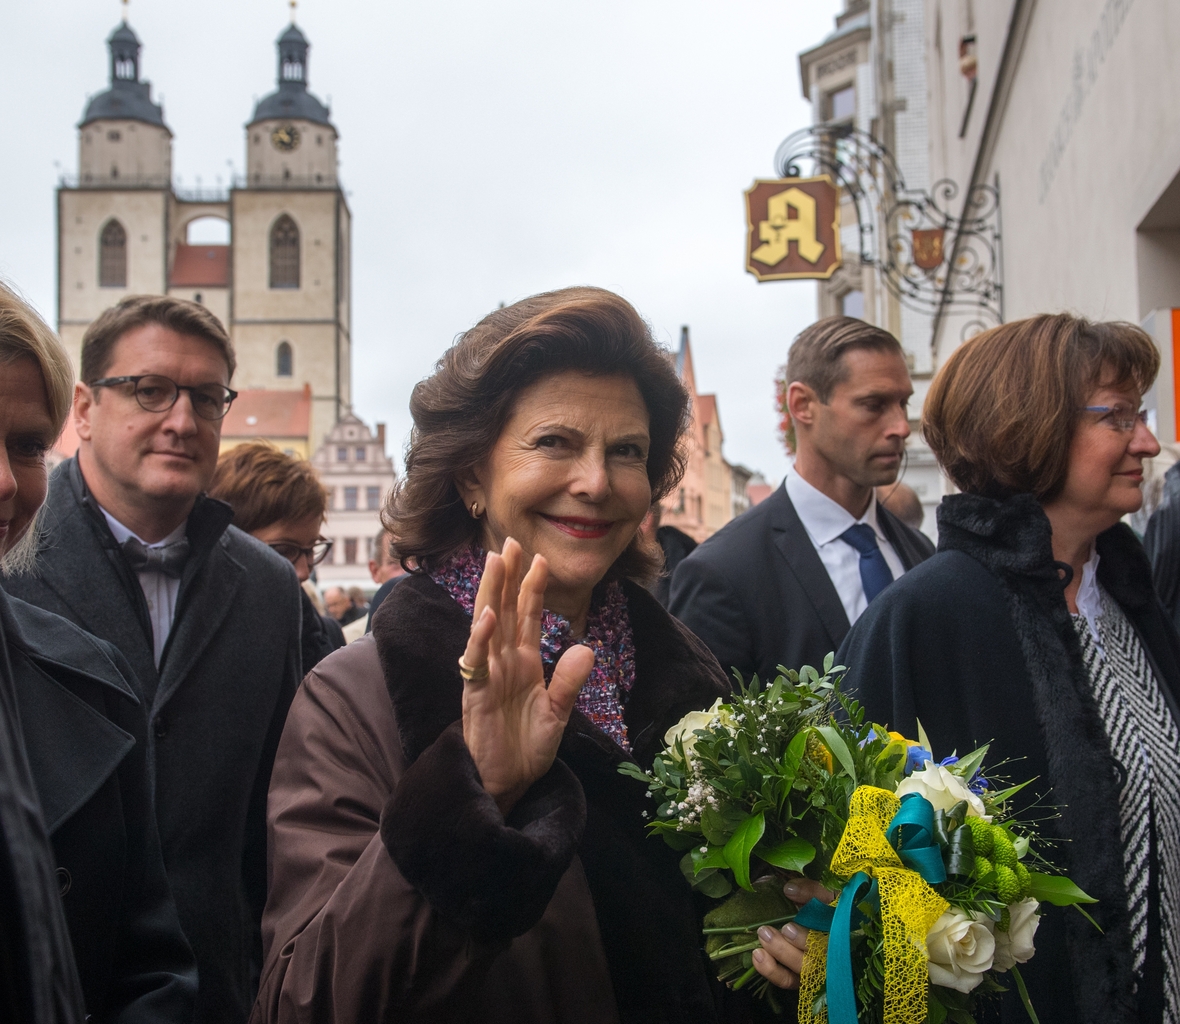 Königin Silvia von Schweden besichtigt bei einem Staatsbesuch die Stadtkirche in Wittenberg in Sachsen-Anhalt.